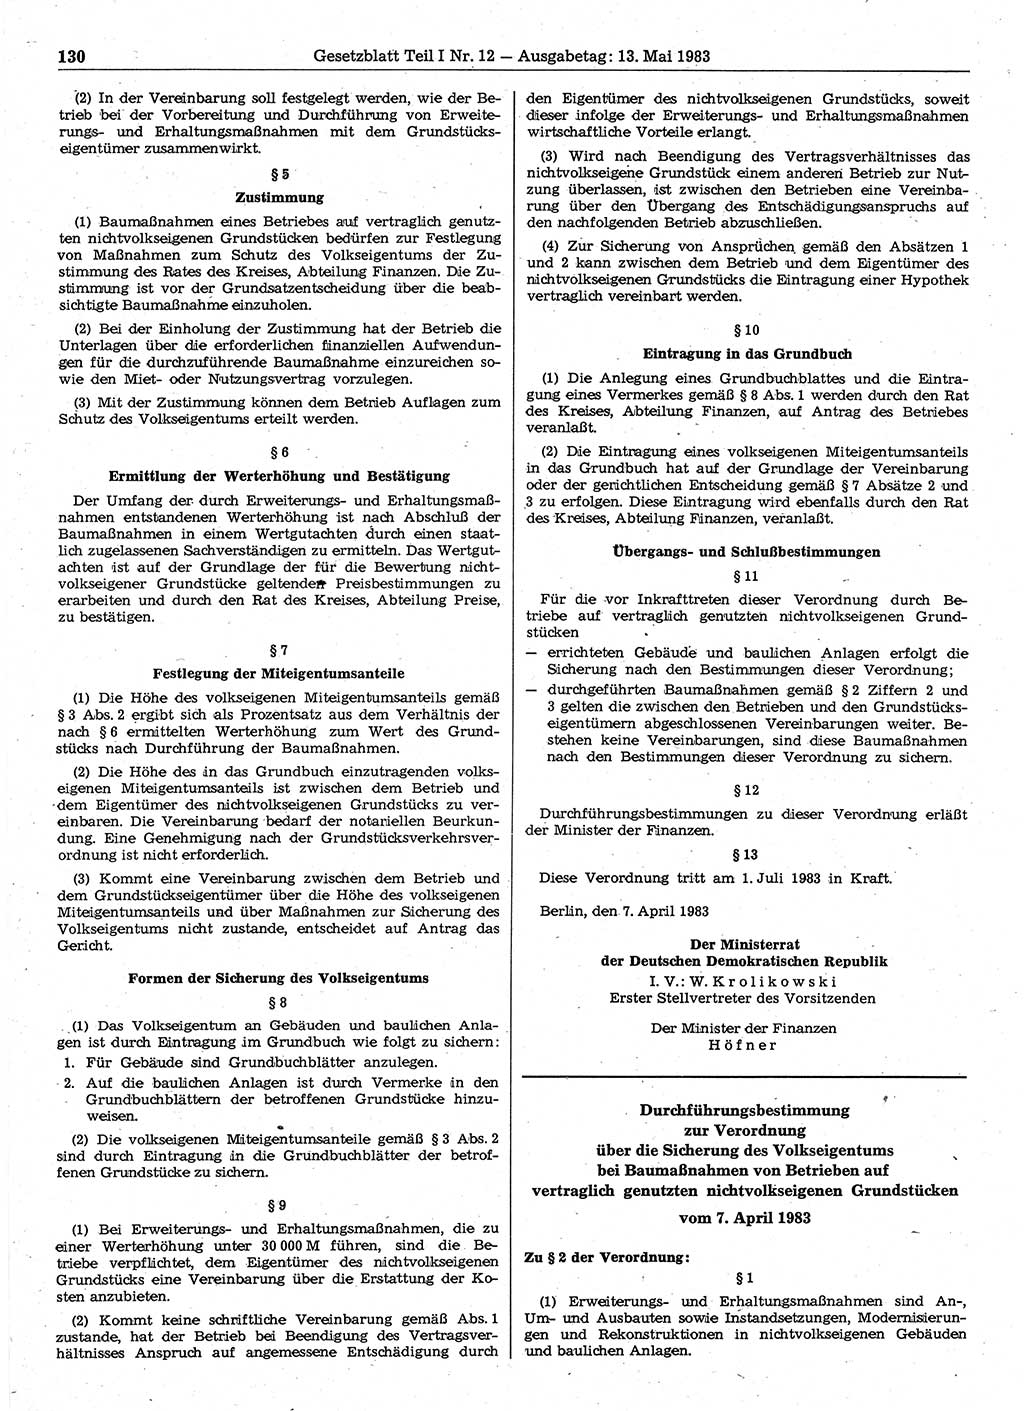 Gesetzblatt (GBl.) der Deutschen Demokratischen Republik (DDR) Teil Ⅰ 1983, Seite 130 (GBl. DDR Ⅰ 1983, S. 130)